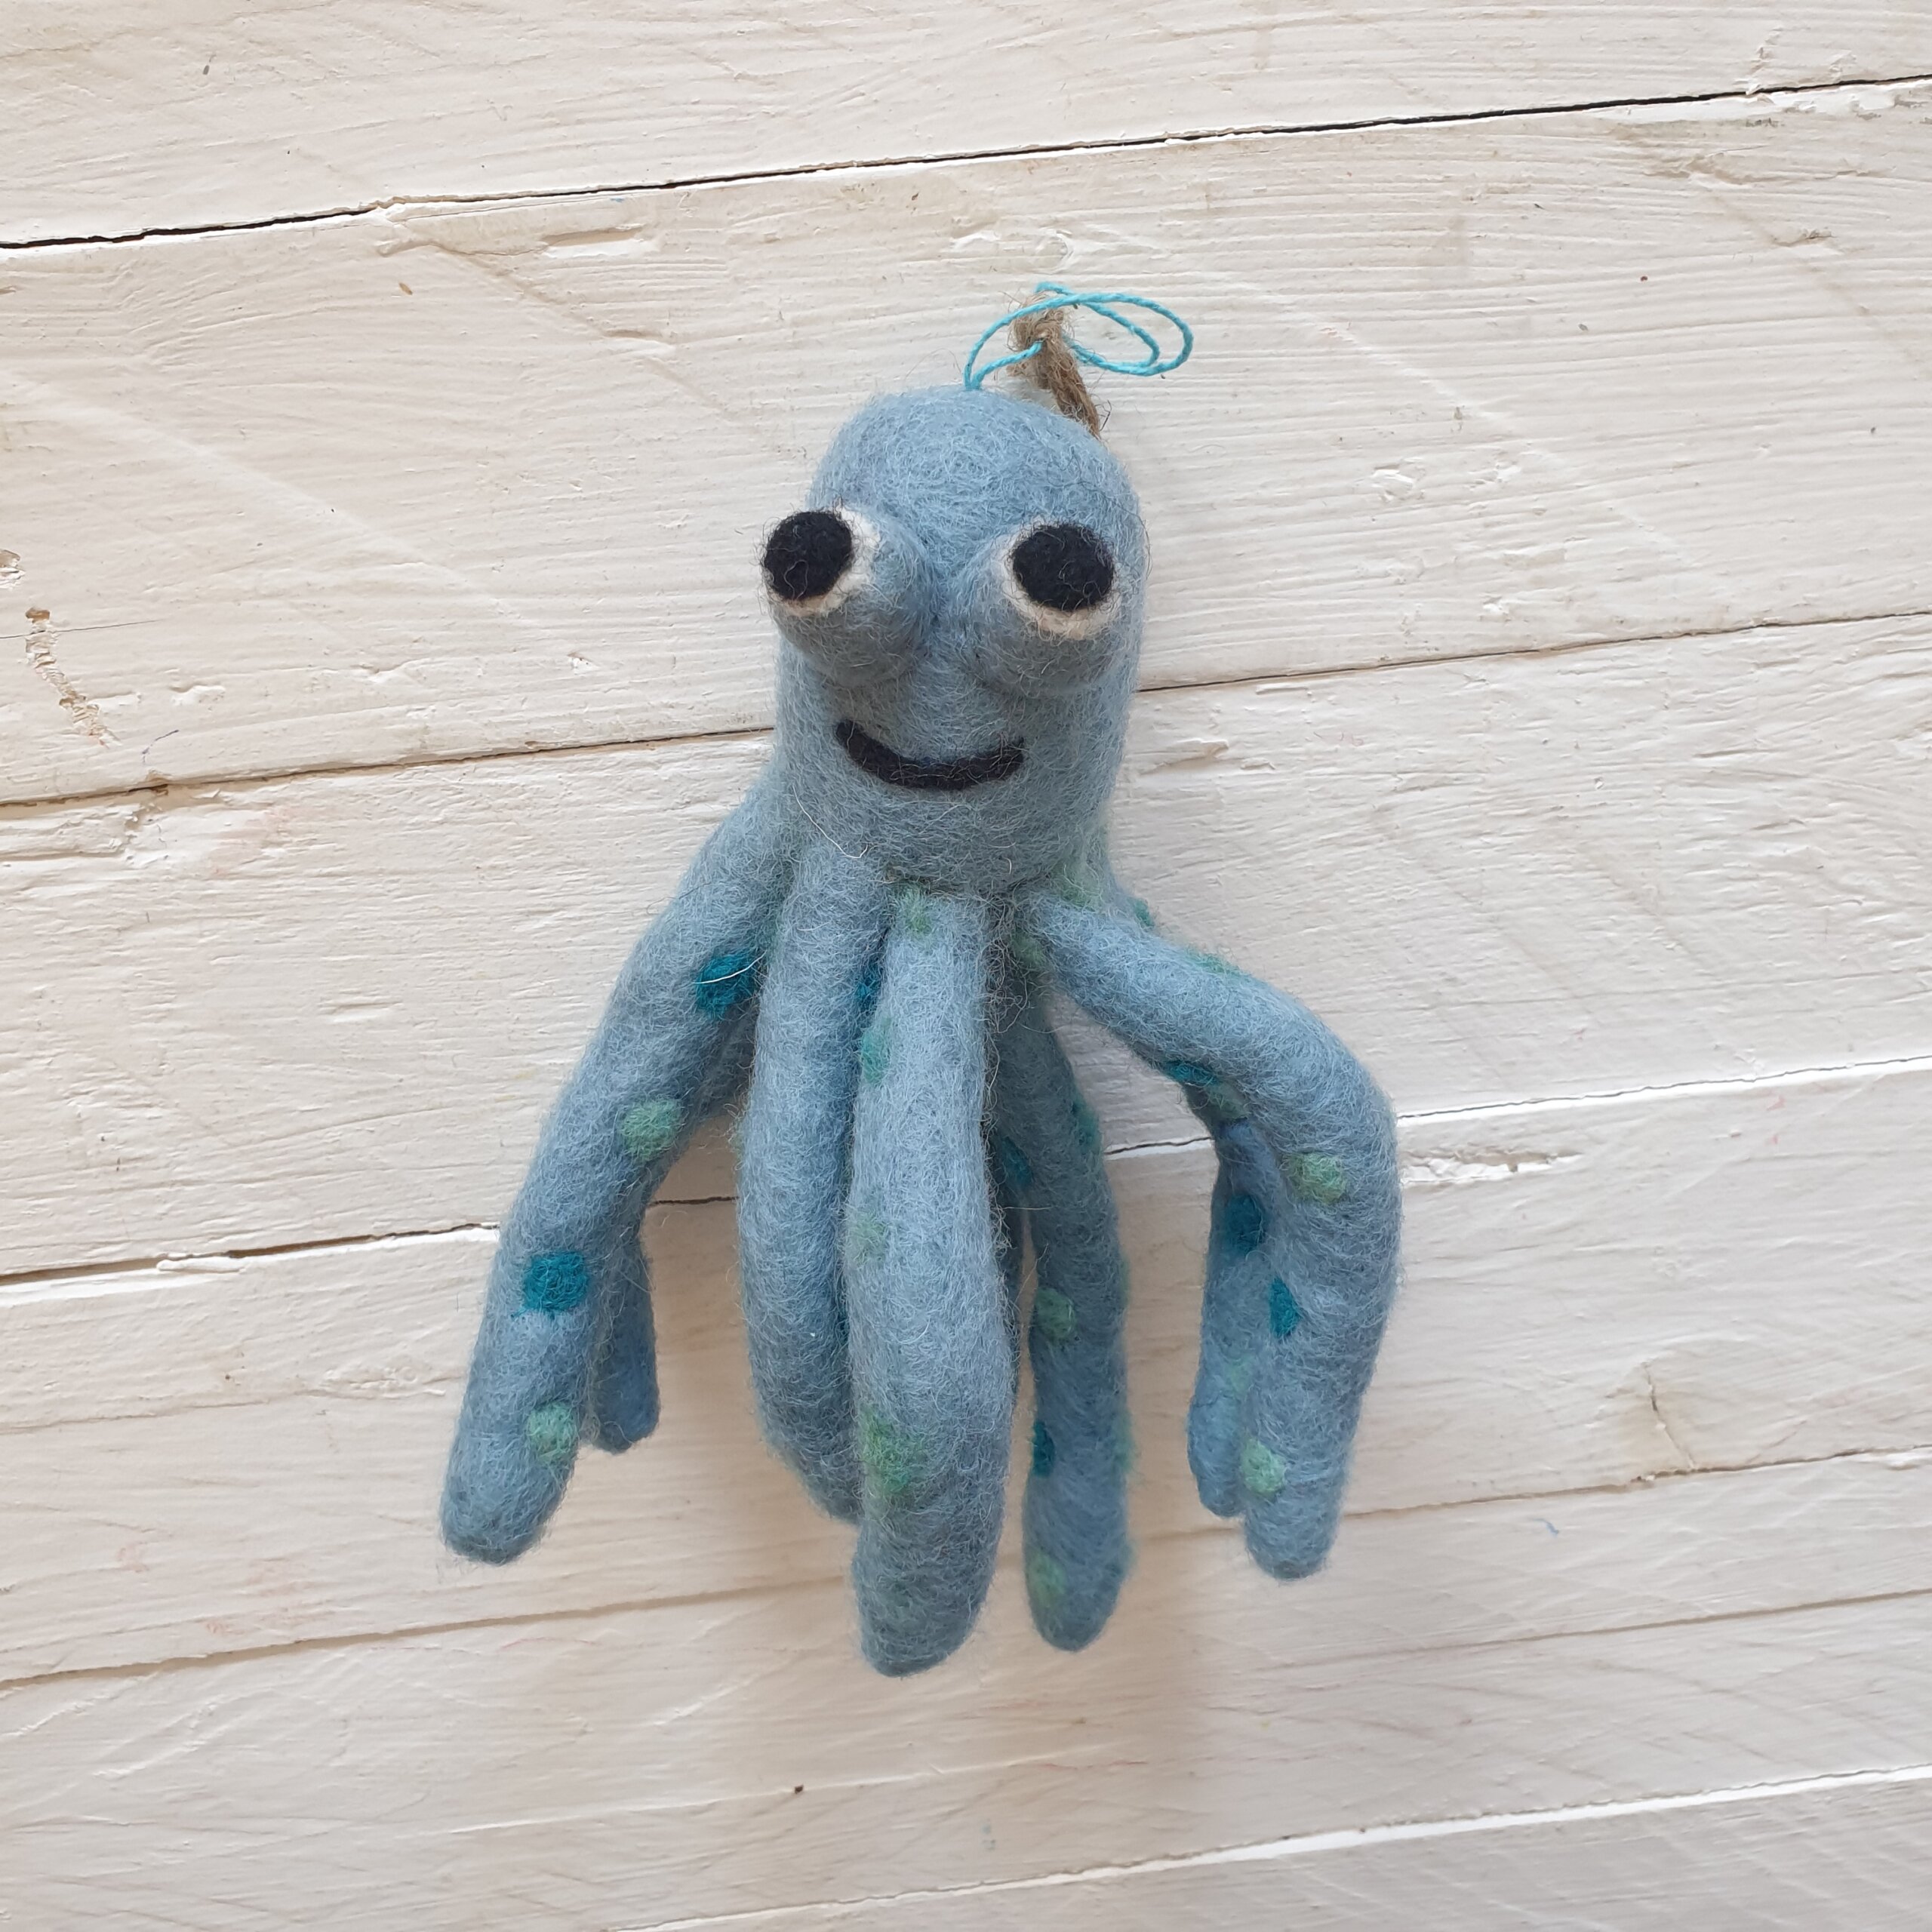 felt-so-good-felt-ollie-the-octopus